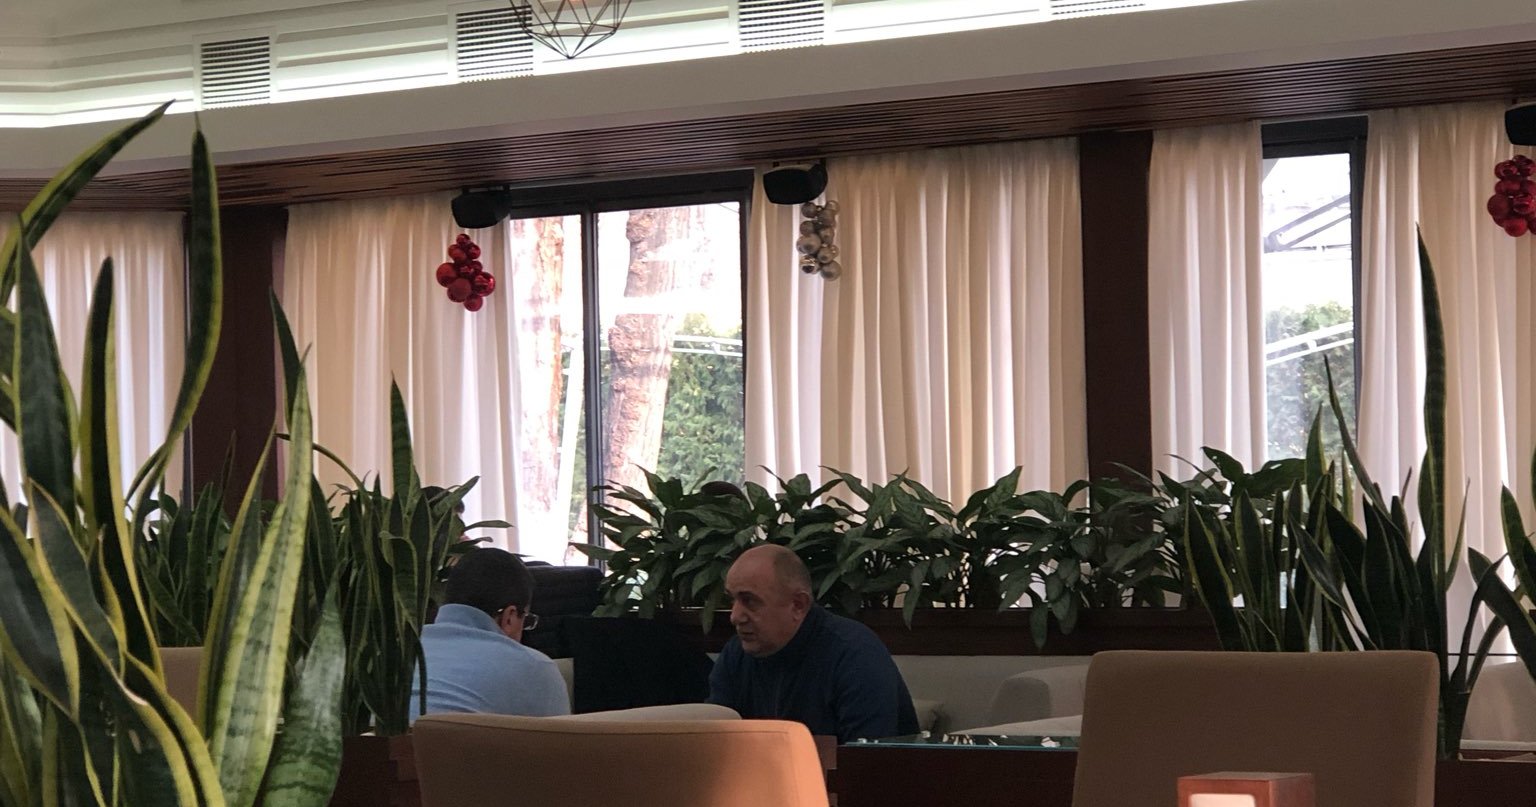 Պատահական հանդիպում, թե՞... Արայիկ Հարությունյանն ու Սամվել Բաբայանը երևանյան սրճարանում